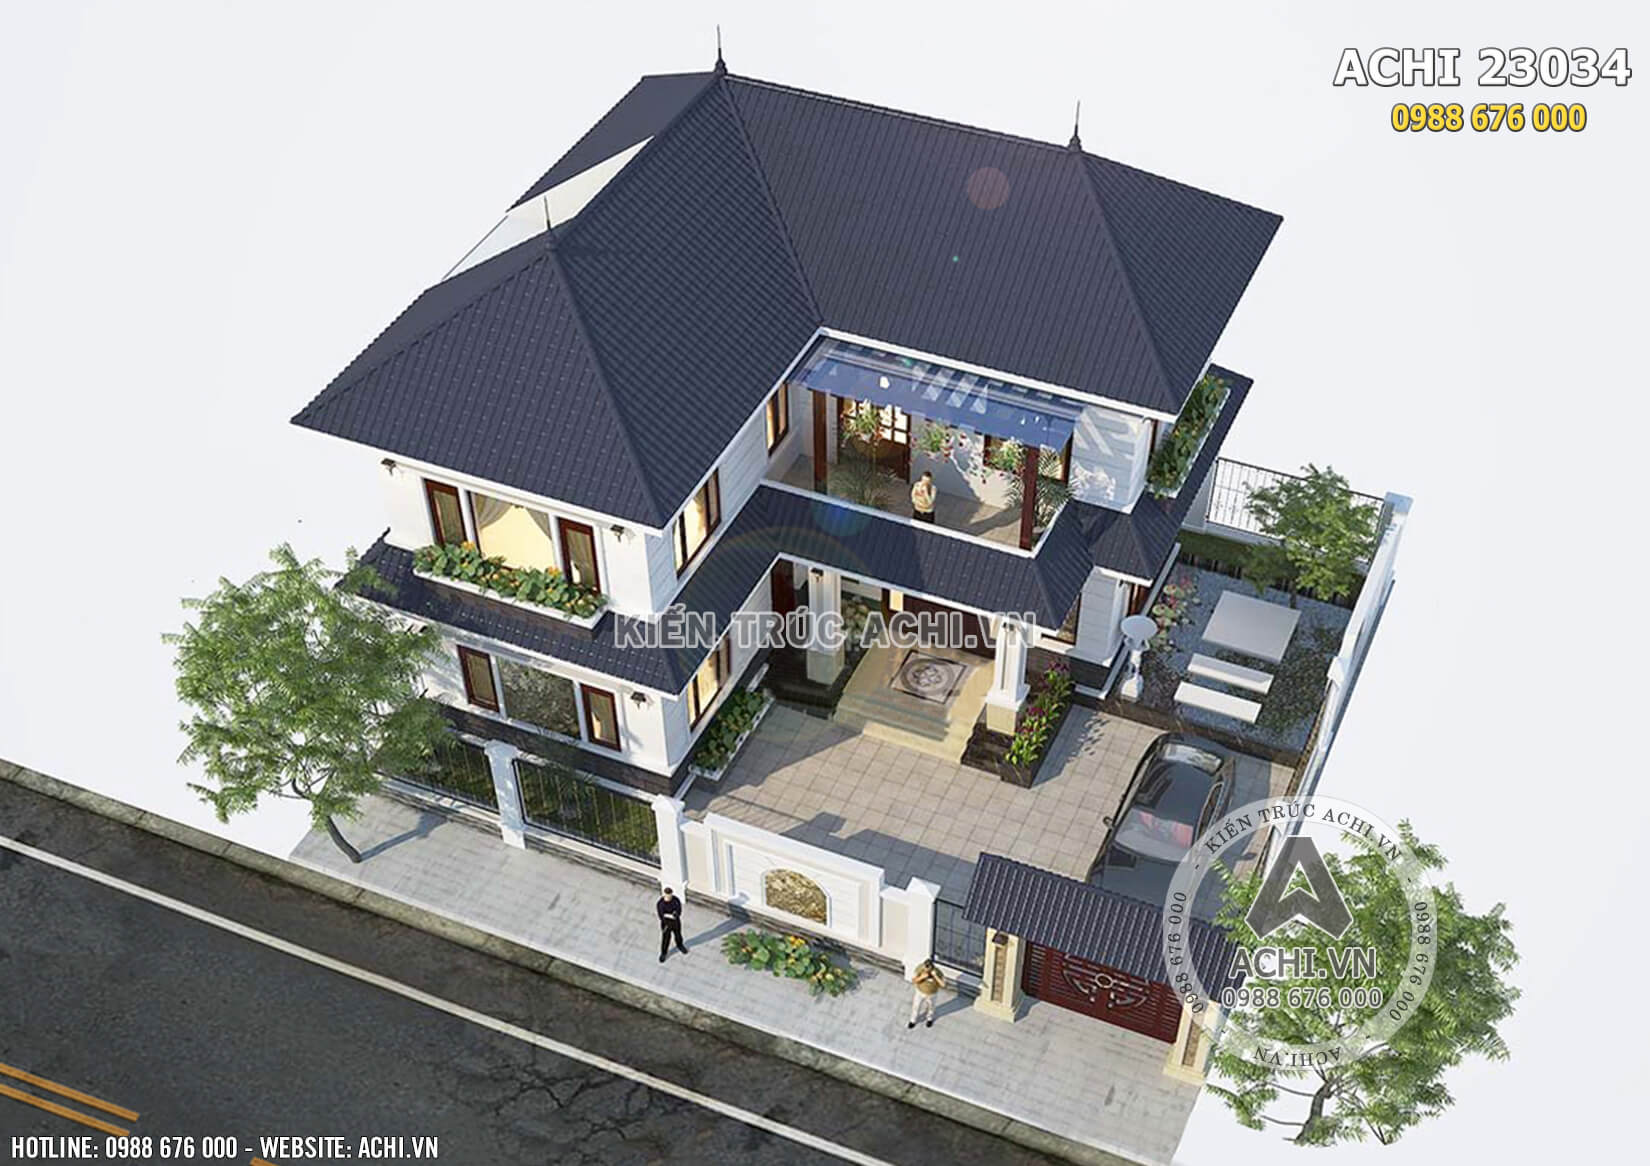 Thiết kế biệt thự 2 tầng mái thái hình chữ L 10x10m tại Thạch Thất  NETBT2T207 - Vtkong - Kiến trúc sư